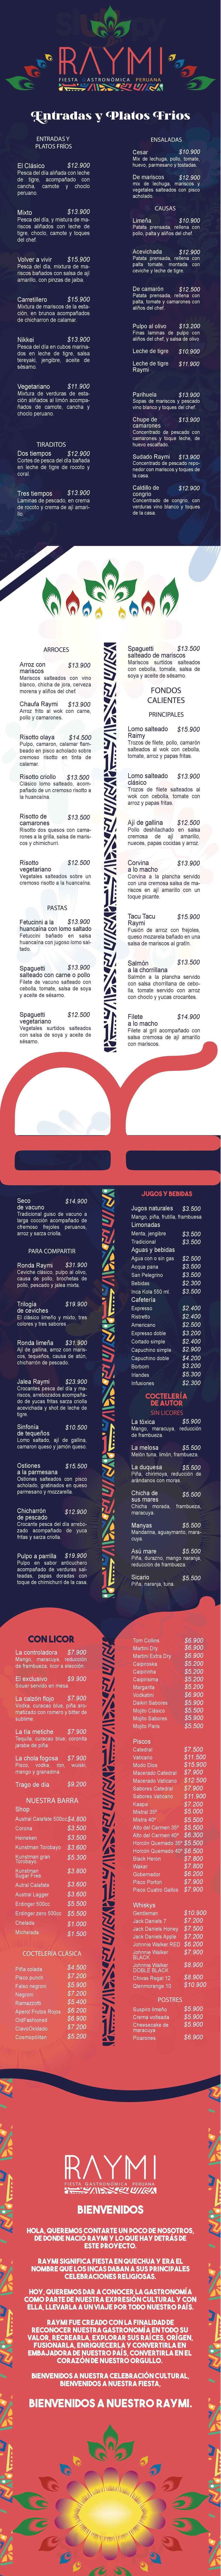 Raymi Curicó Curicó Menu - 1